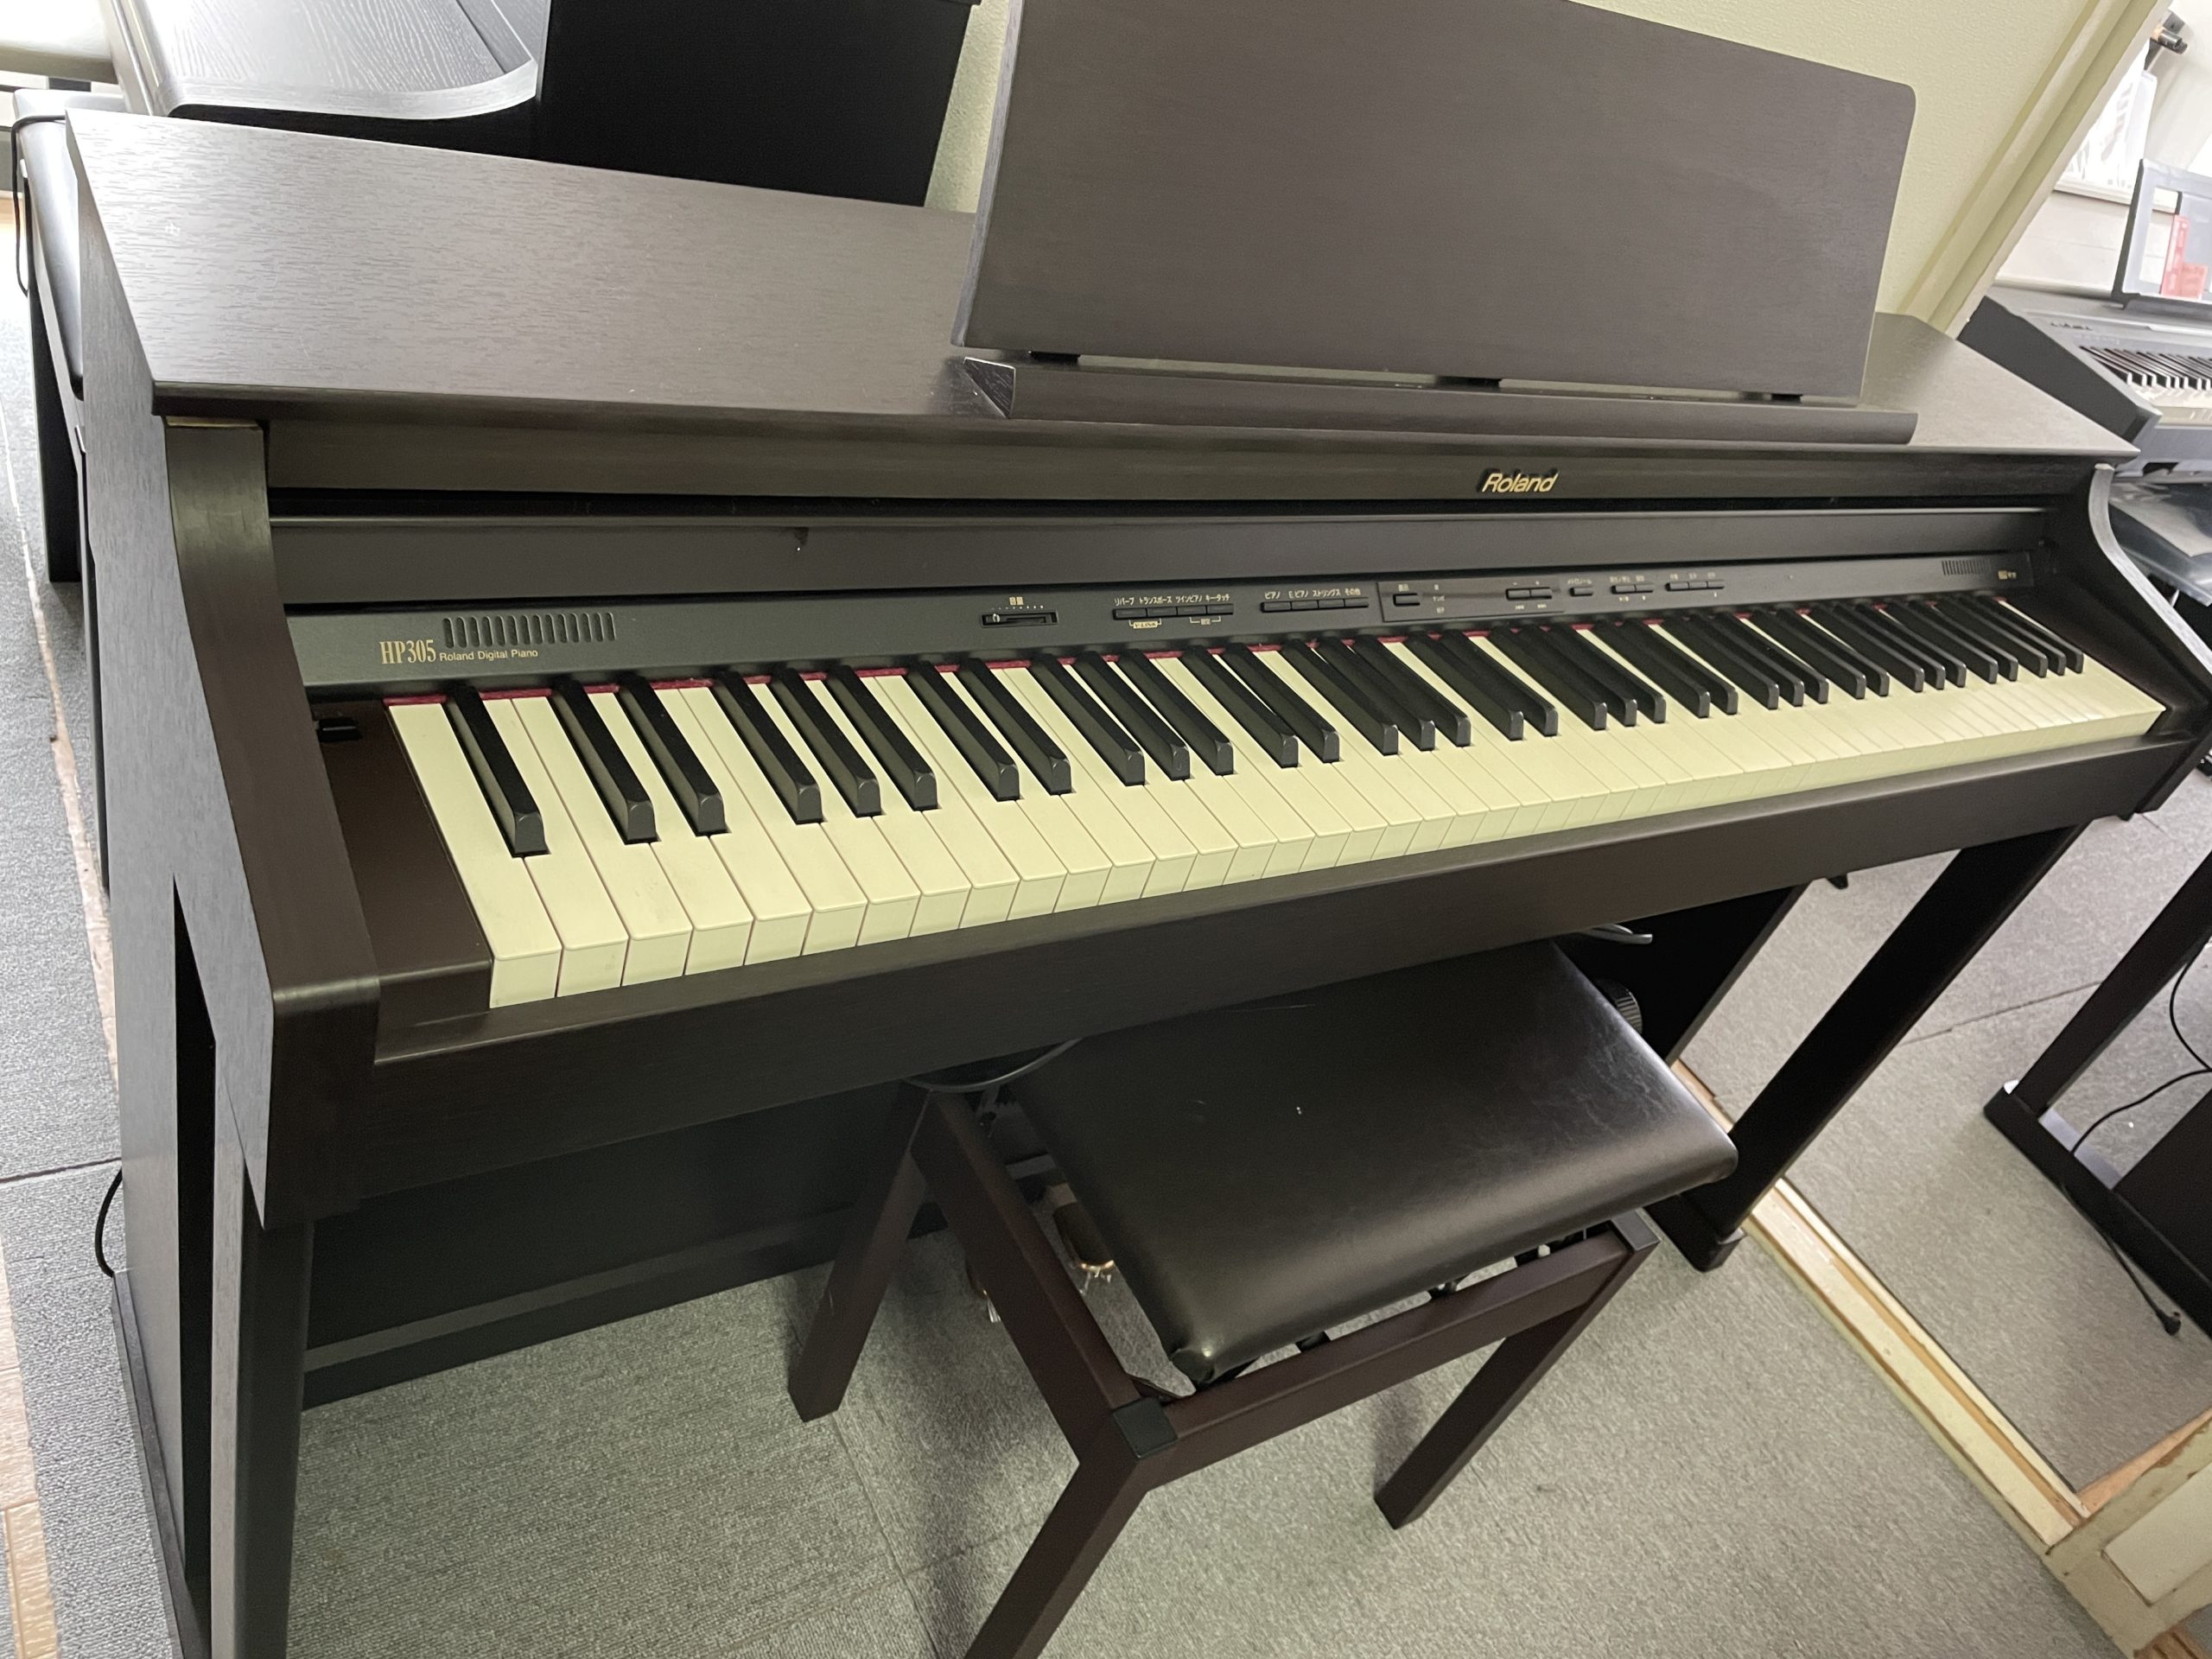 激安取寄電子ピアノ Roland ローランド 電子ピアノ HP305-GP ローランド